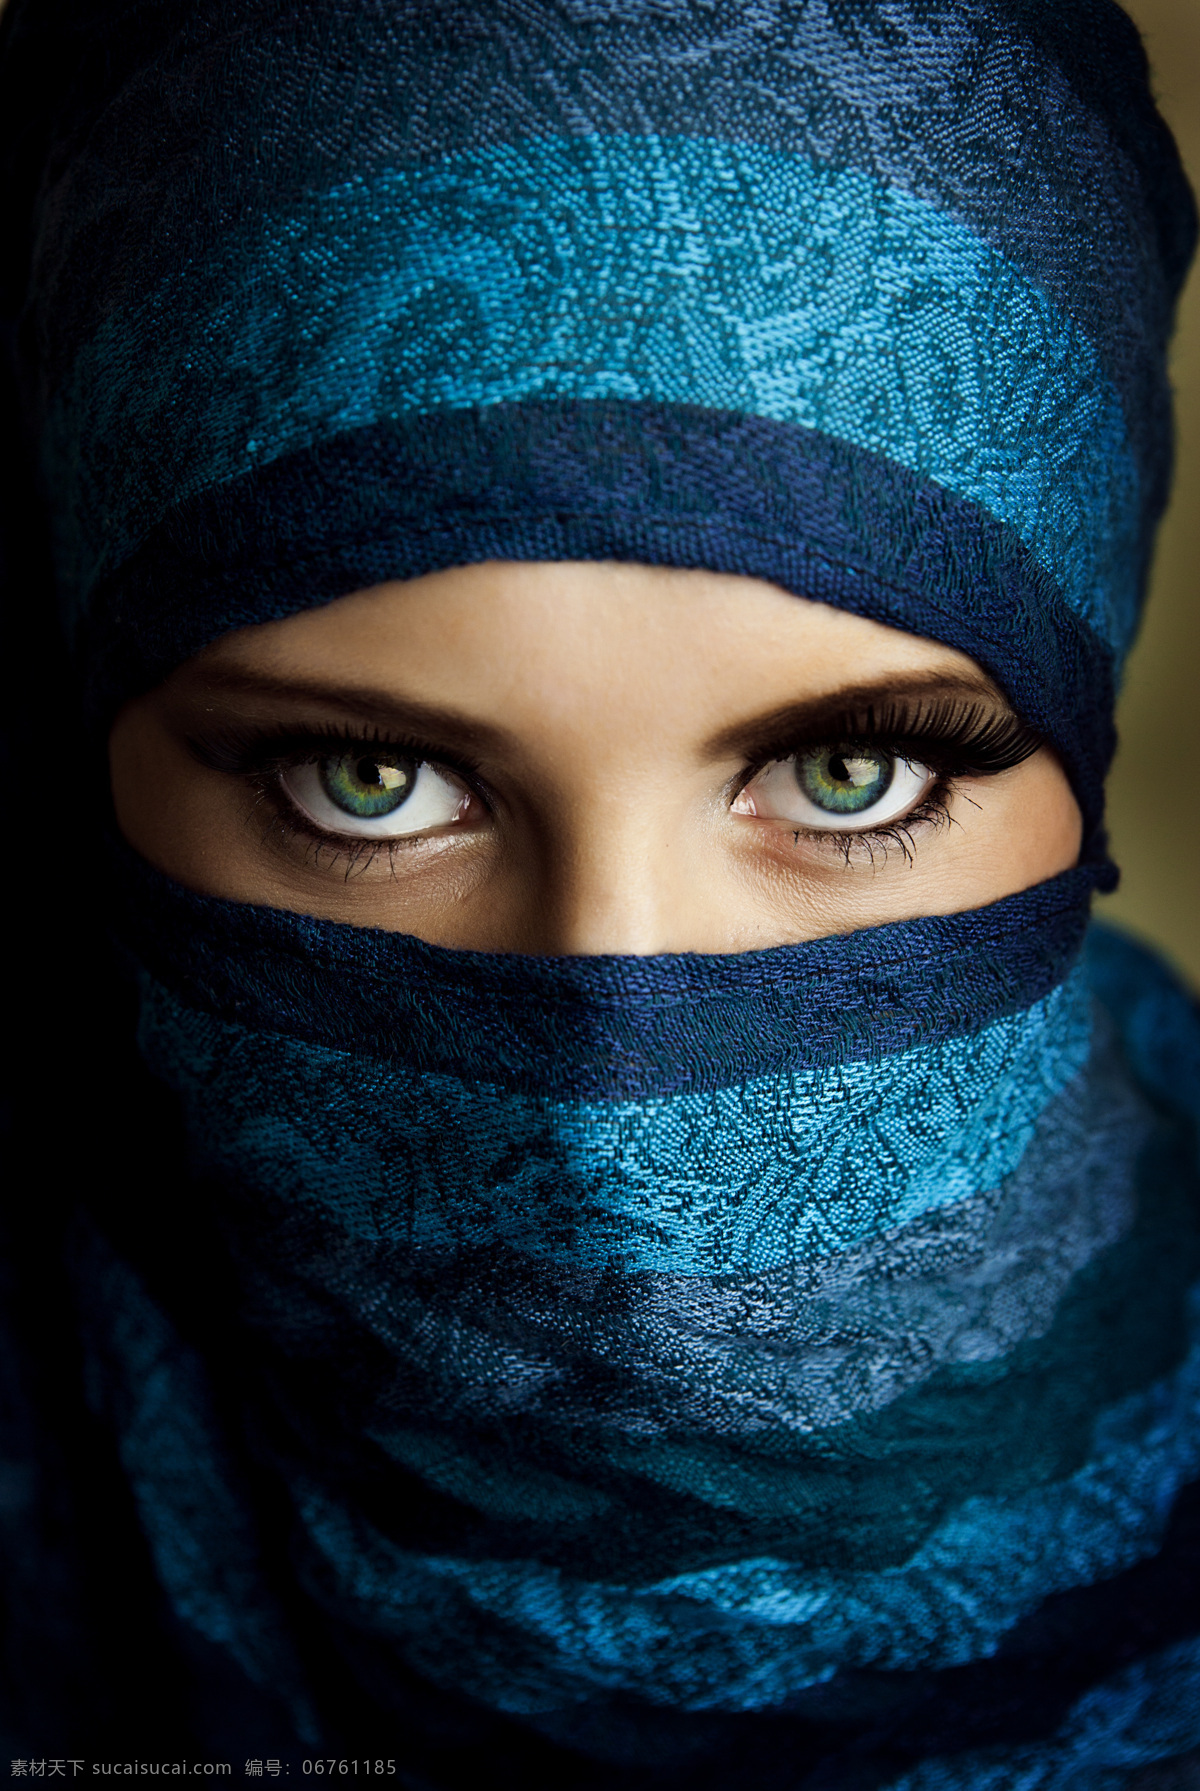 蒙面 装扮 女性 阿拉伯女性 伊朗女性 外国女性 头巾 女人 美女图片 人物图片